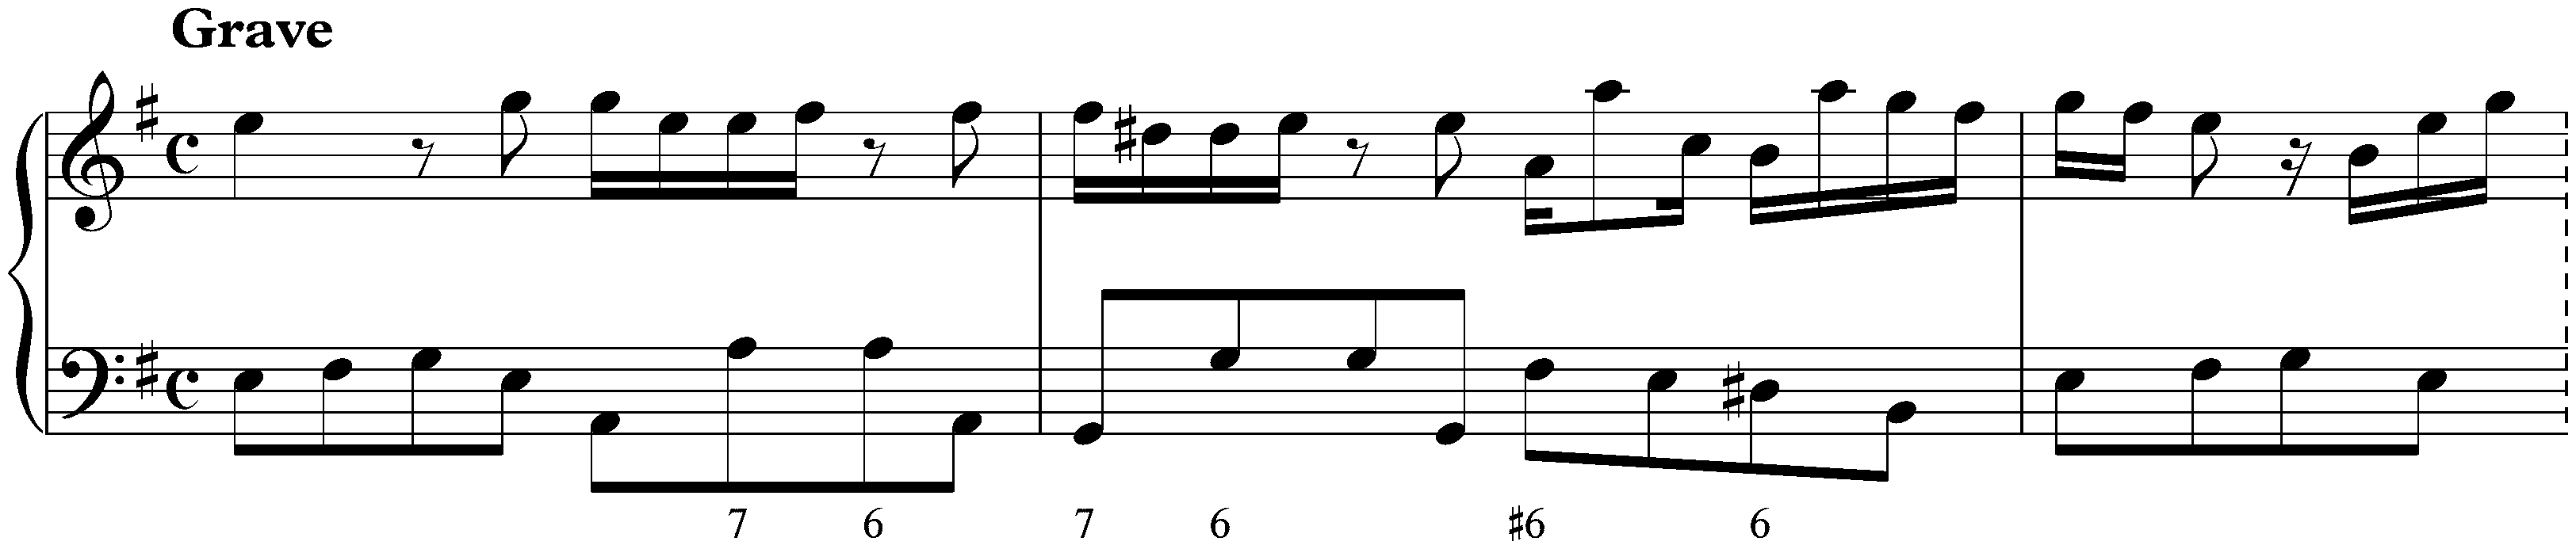 Sonata in E minor, K. 81; 1. Grave